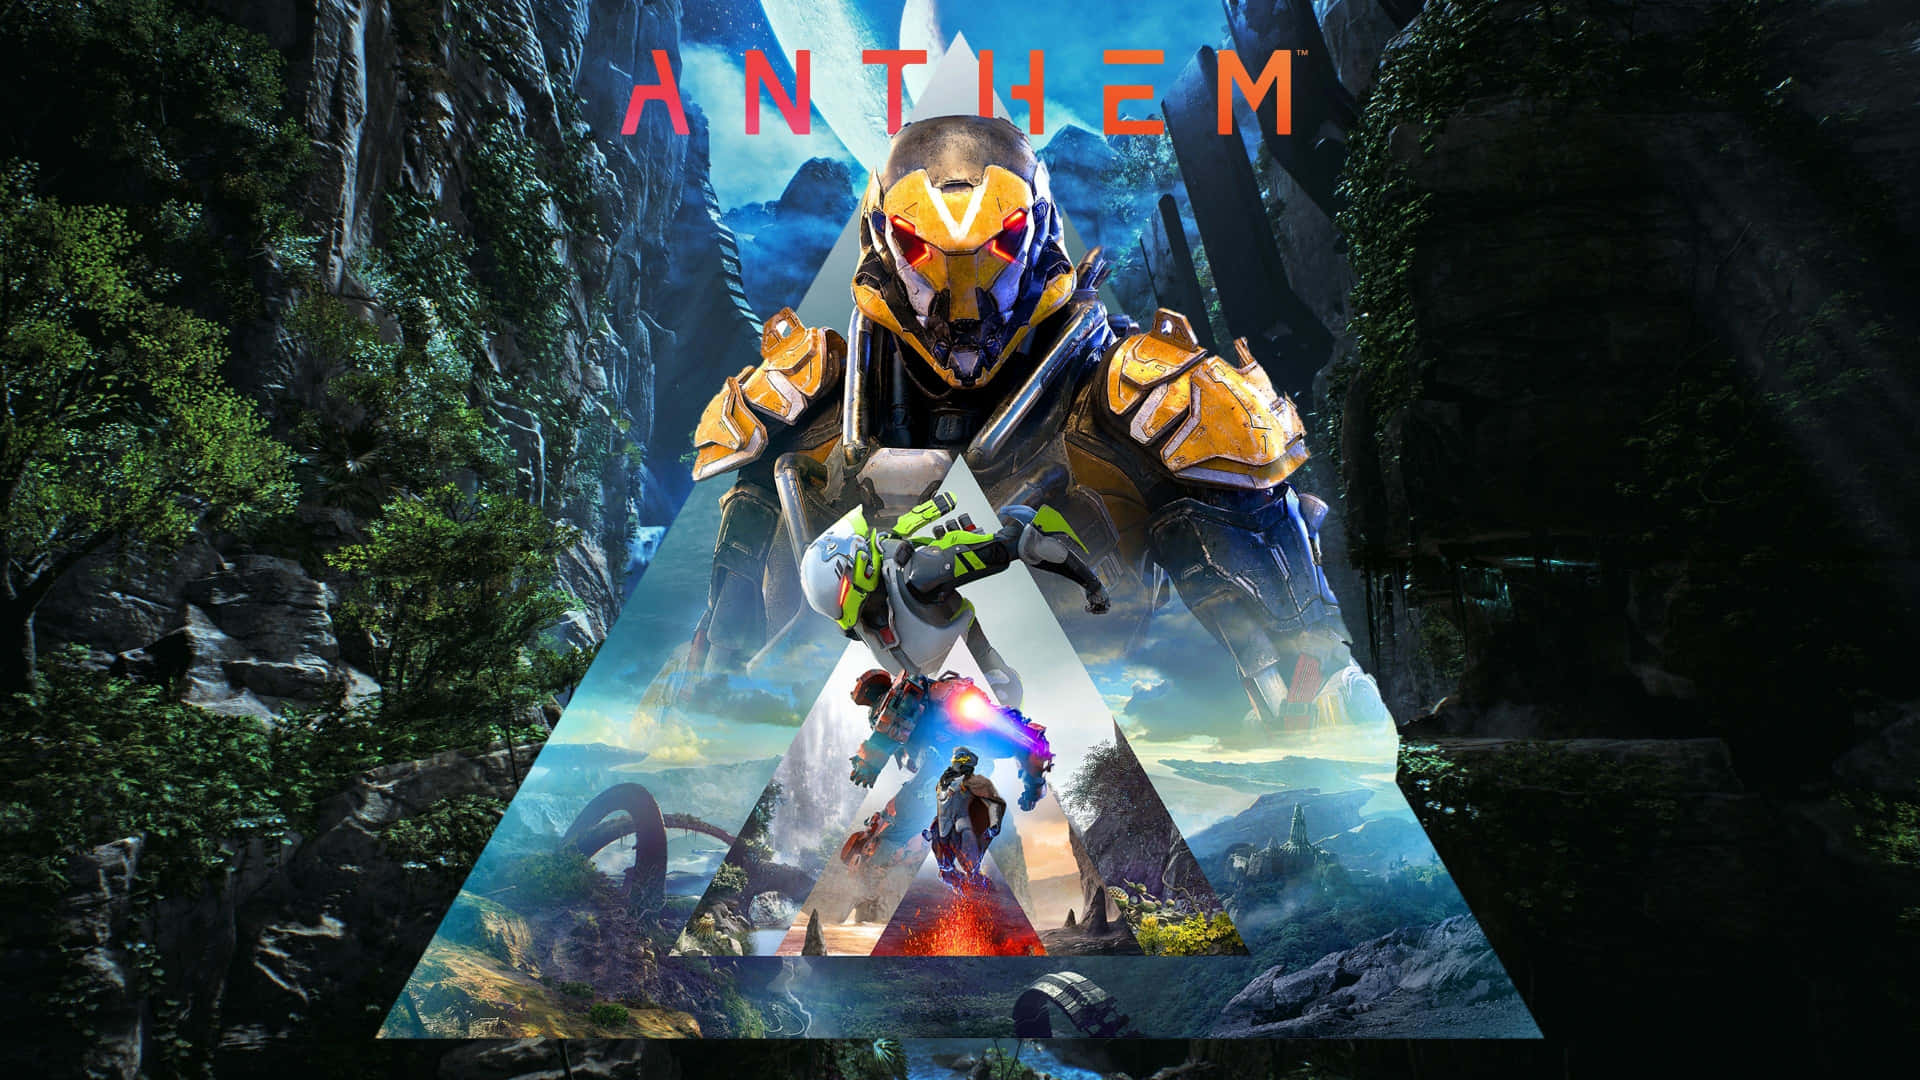 Forbered dig på spændende kampe i Anthem, den immersive science fiction shooter-oplevelse. Wallpaper